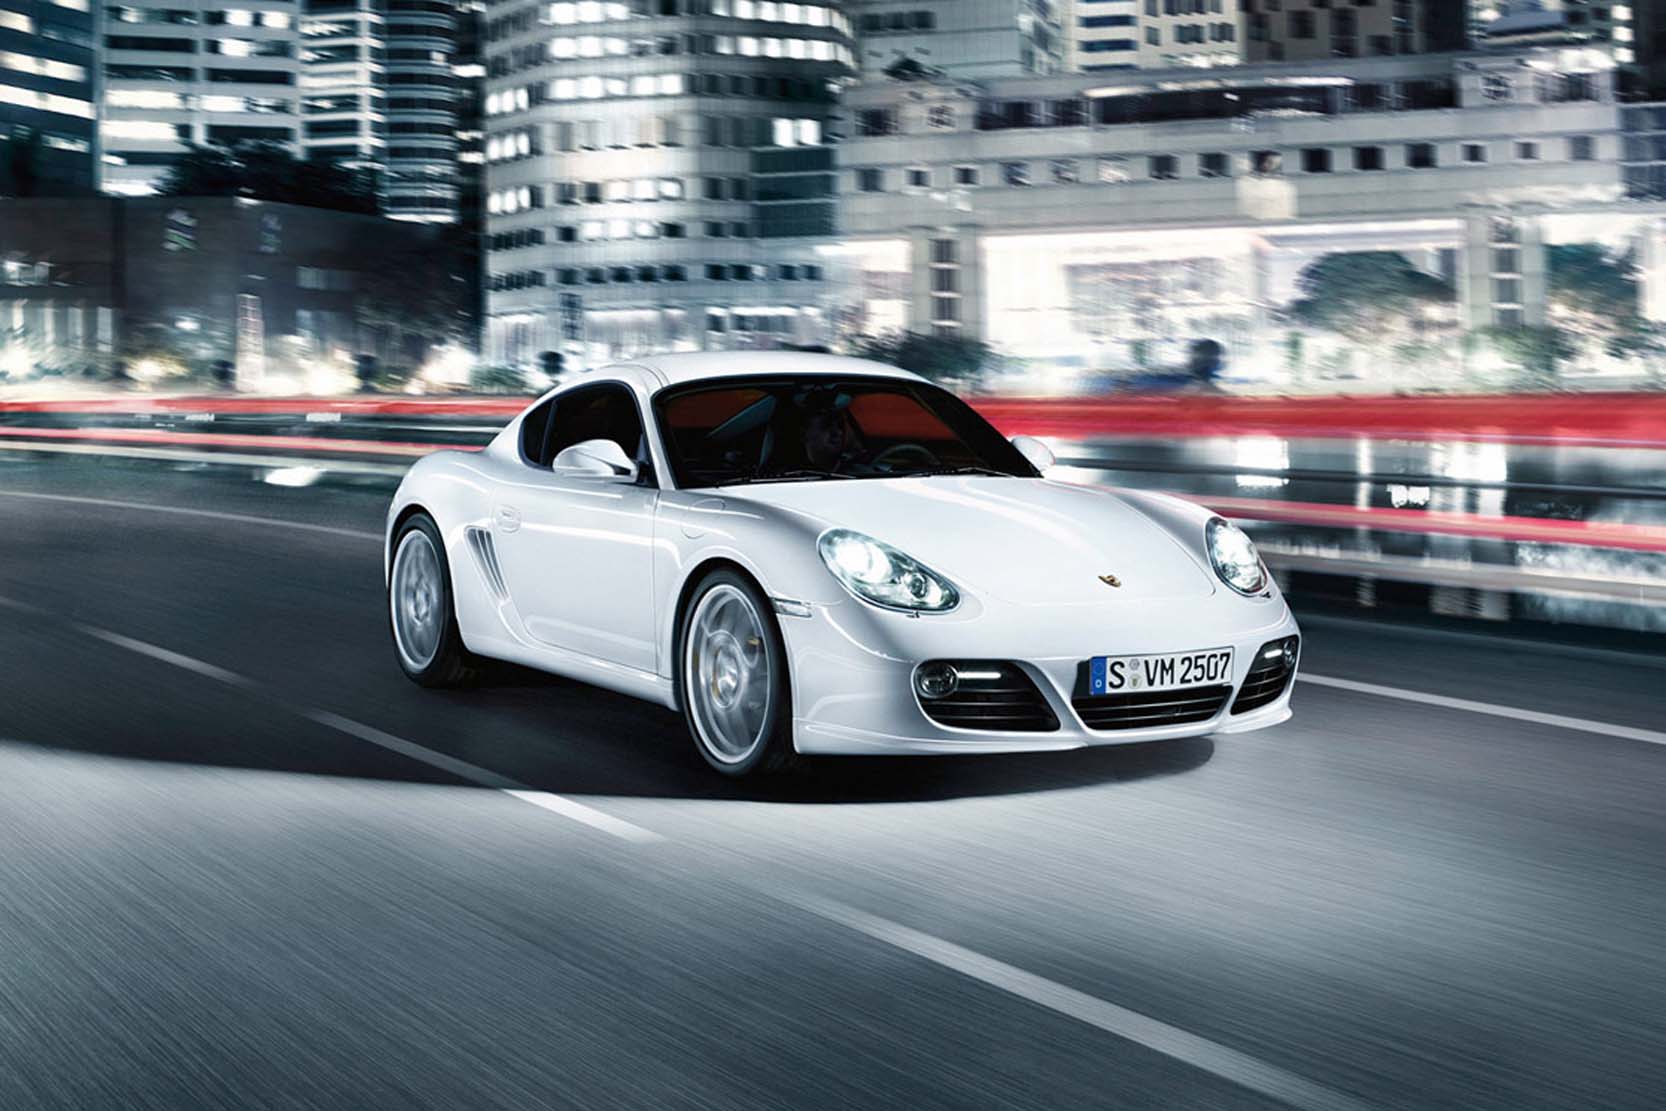 Image principale de l'actu: Porsche cayman s la video les photos la fiche technique 